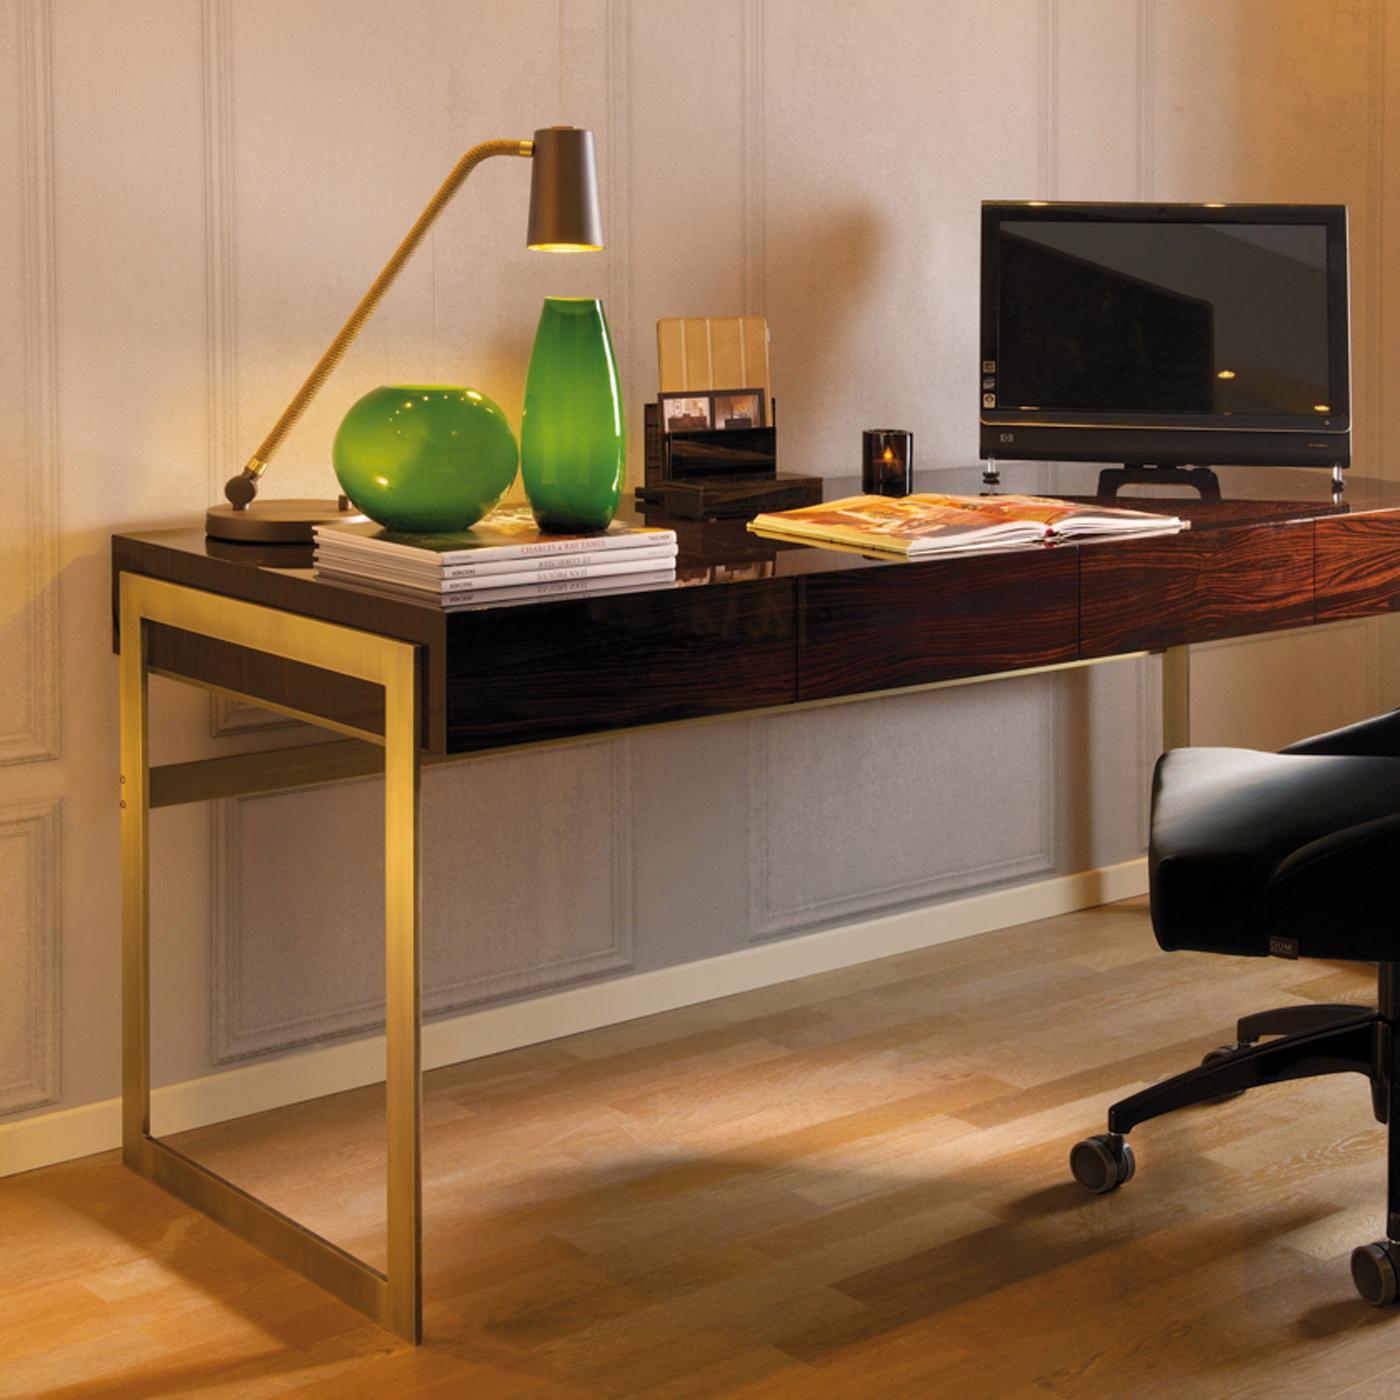 Dieser in meisterhafter Handarbeit von erfahrenen Kunsthandwerkern gefertigte Schreibtisch verbindet luxuriöse Materialien mit einer minimalistischen Designästhetik, die jedem Zuhause oder Büro zeitlose Eleganz verleihen wird. Die rechteckige, mit